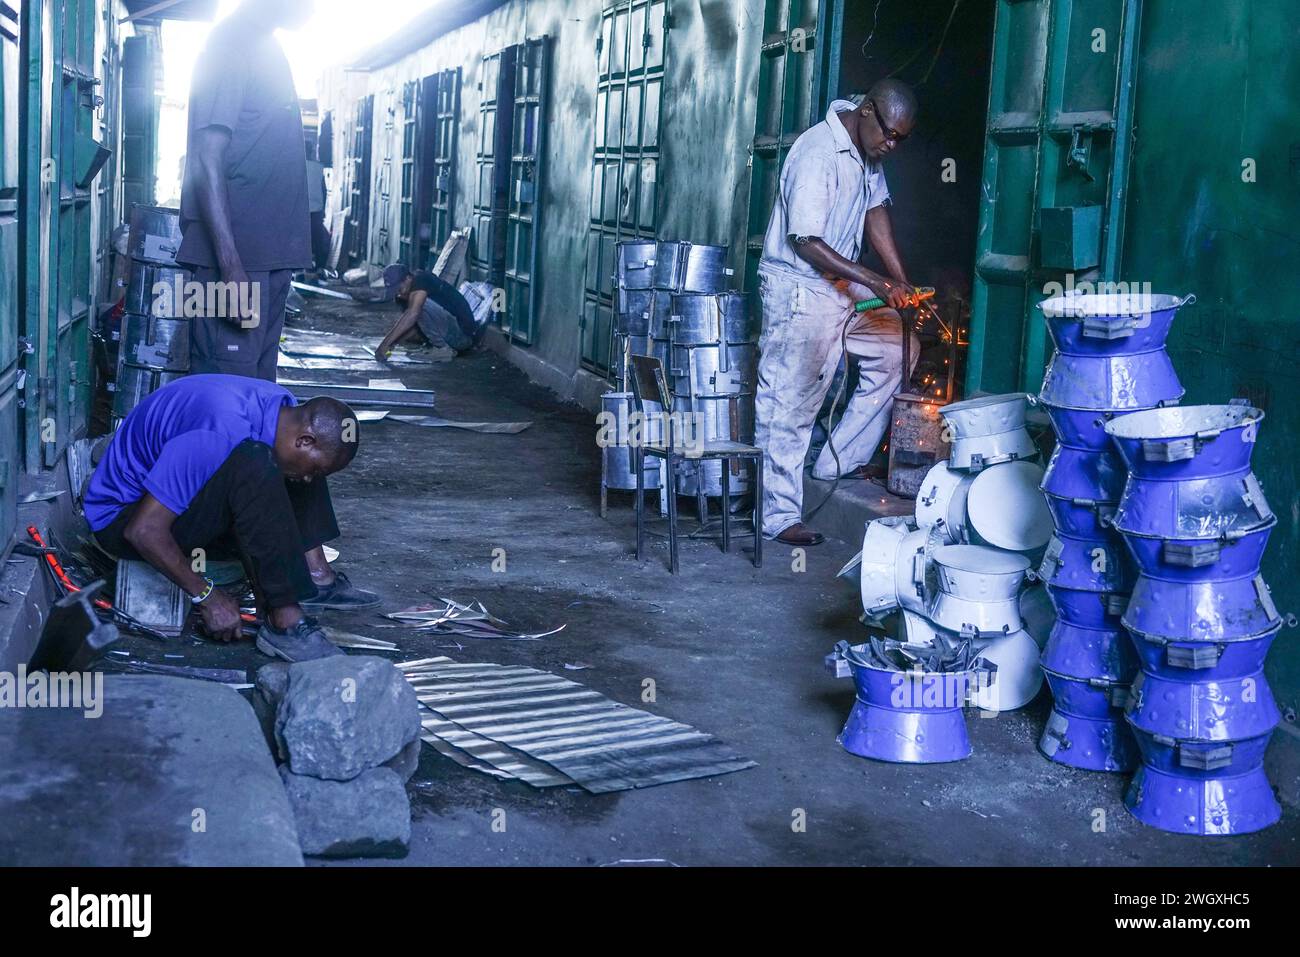 Un soudeur travaille dans son atelier au marché artisanal de Bama à Nakuru. Kenya Jua Kali le secteur informel emploie plus de 15 millions de Kenyans possédant des compétences dans le travail artisanal. Banque D'Images